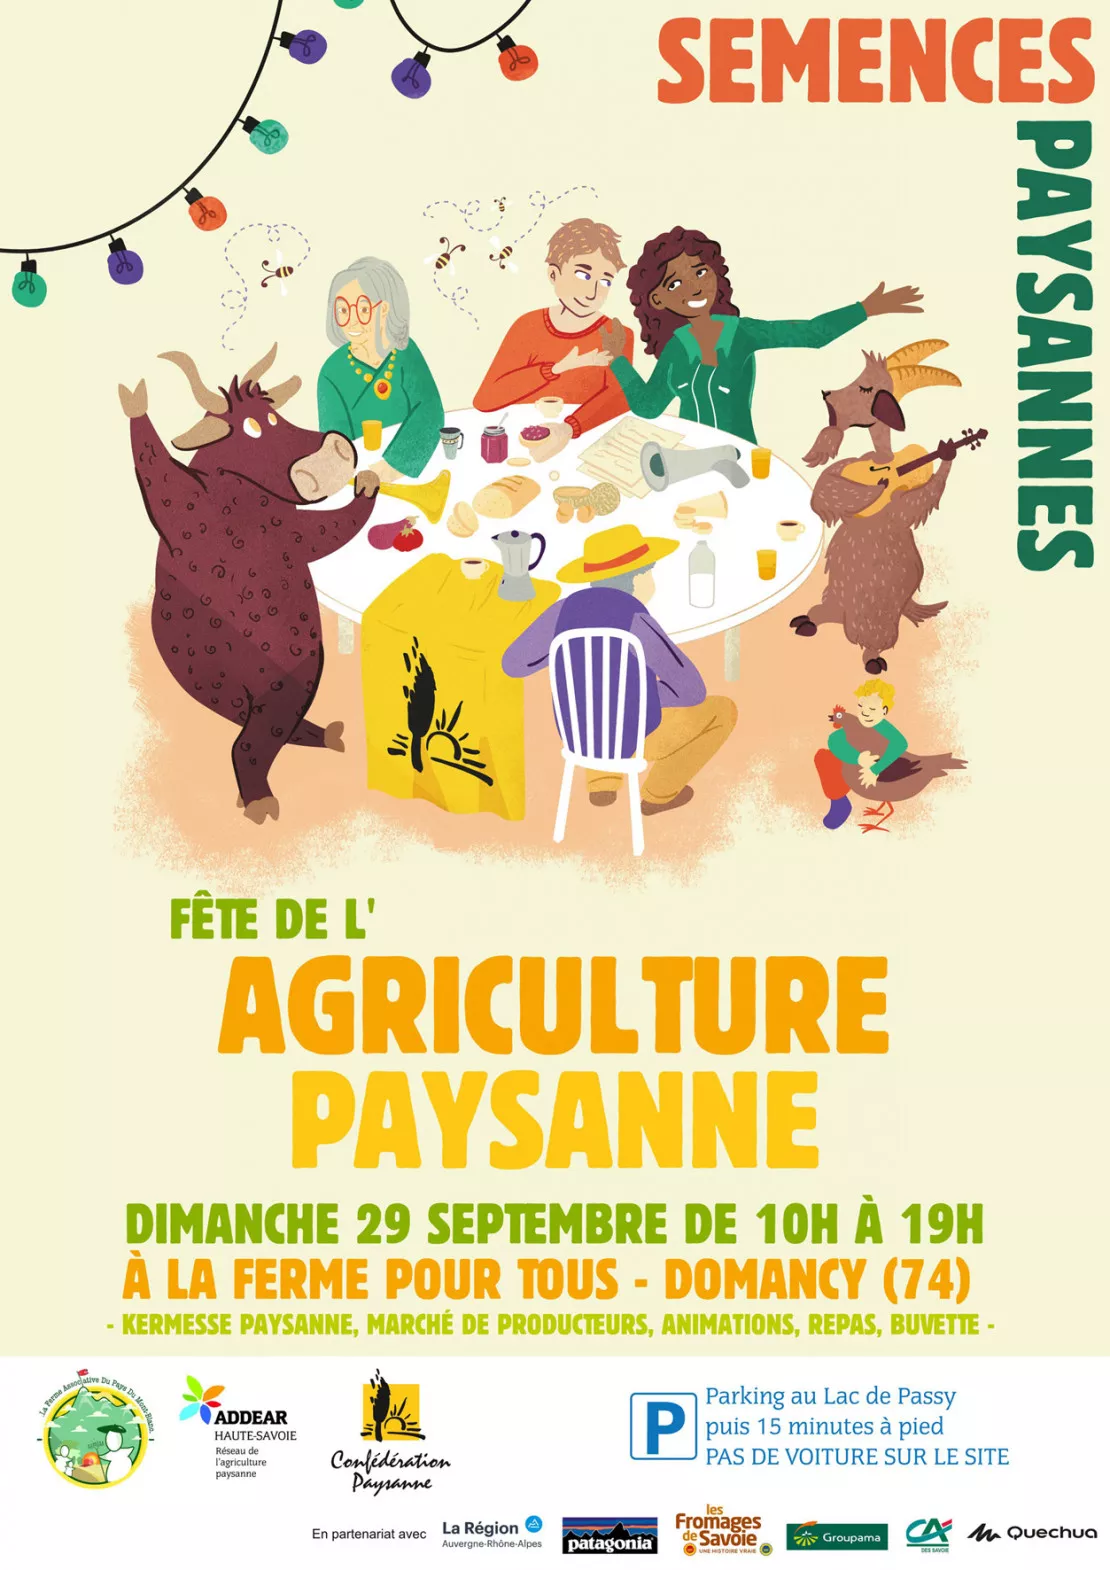 Fête de l'Agriculture paysanne le dimanche 29 septembre à Domancy